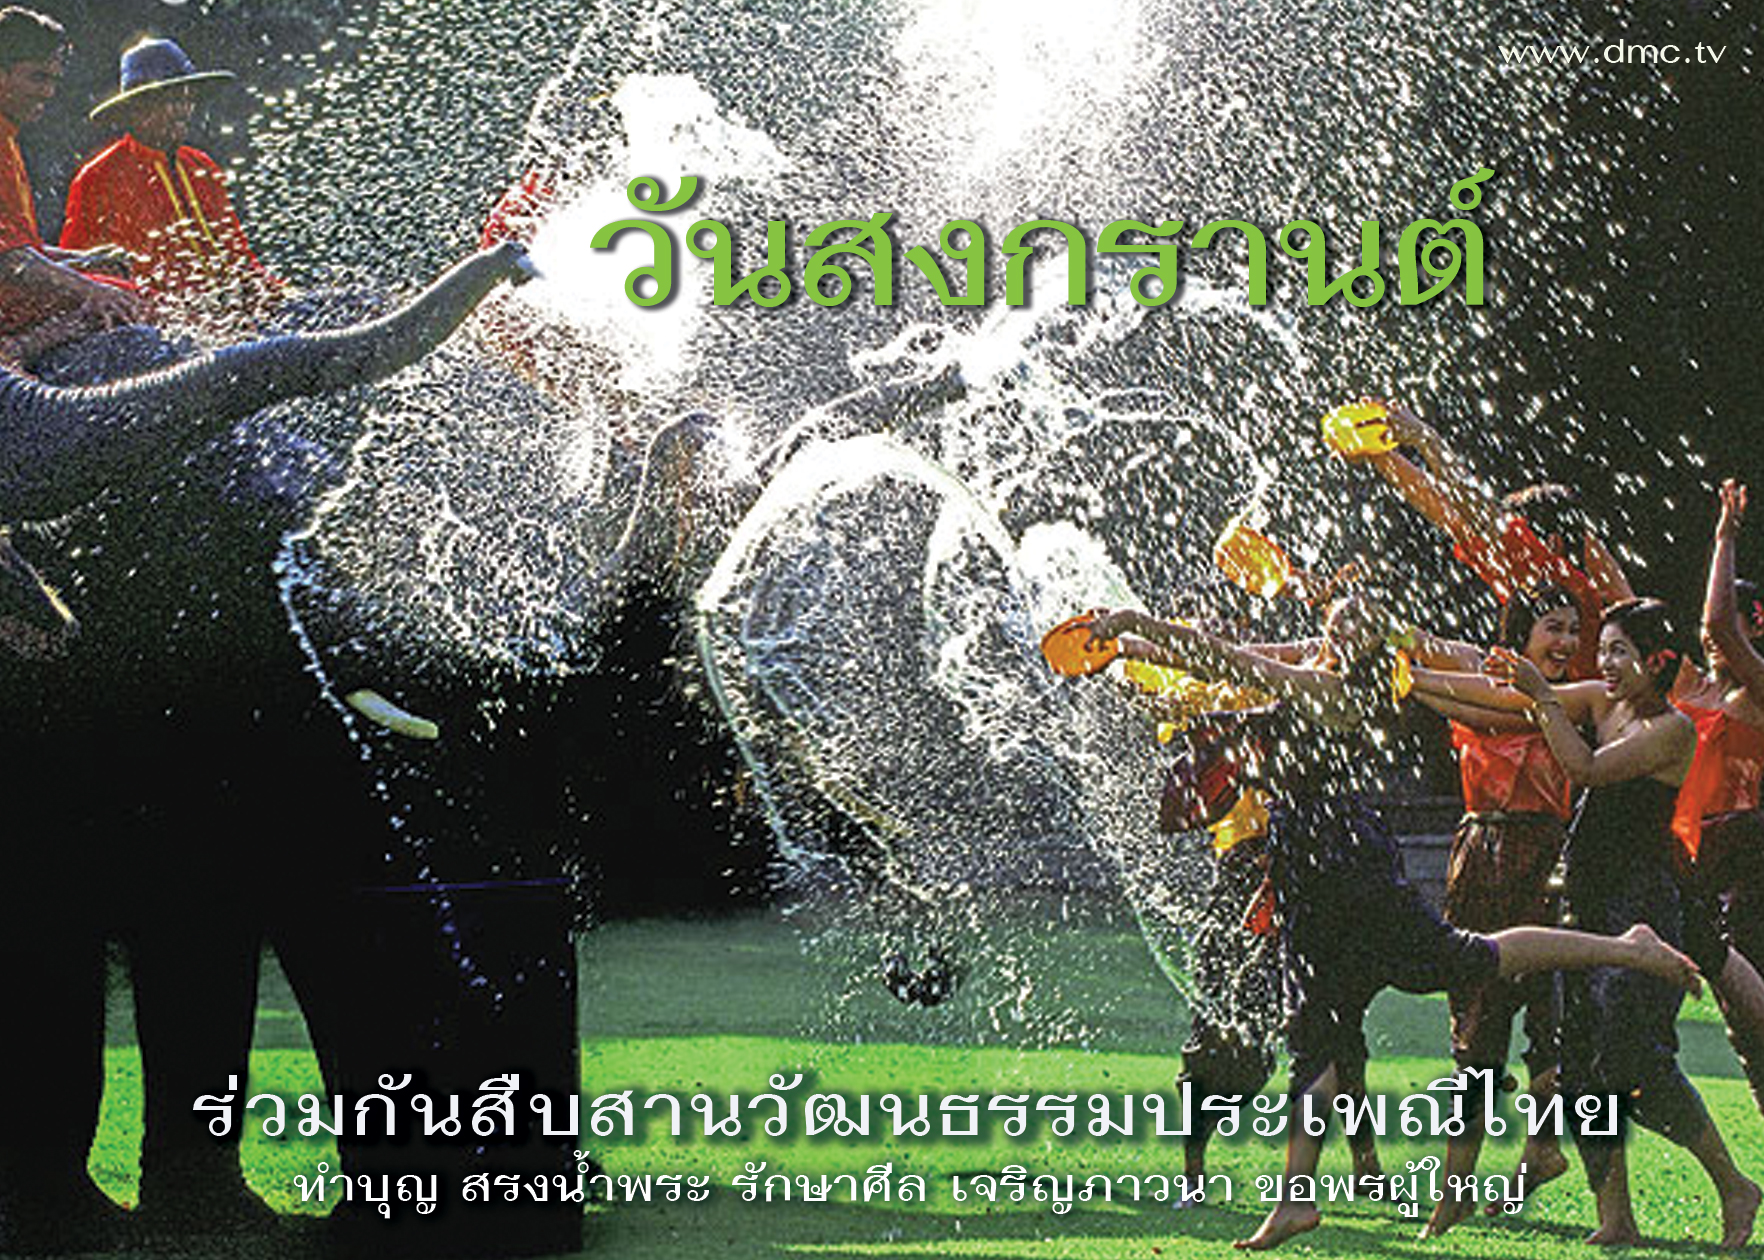 วันสงกรานต์เป็นประเพณีเก่าแก่ของคนไทยมีการทำบุญตักบาตร